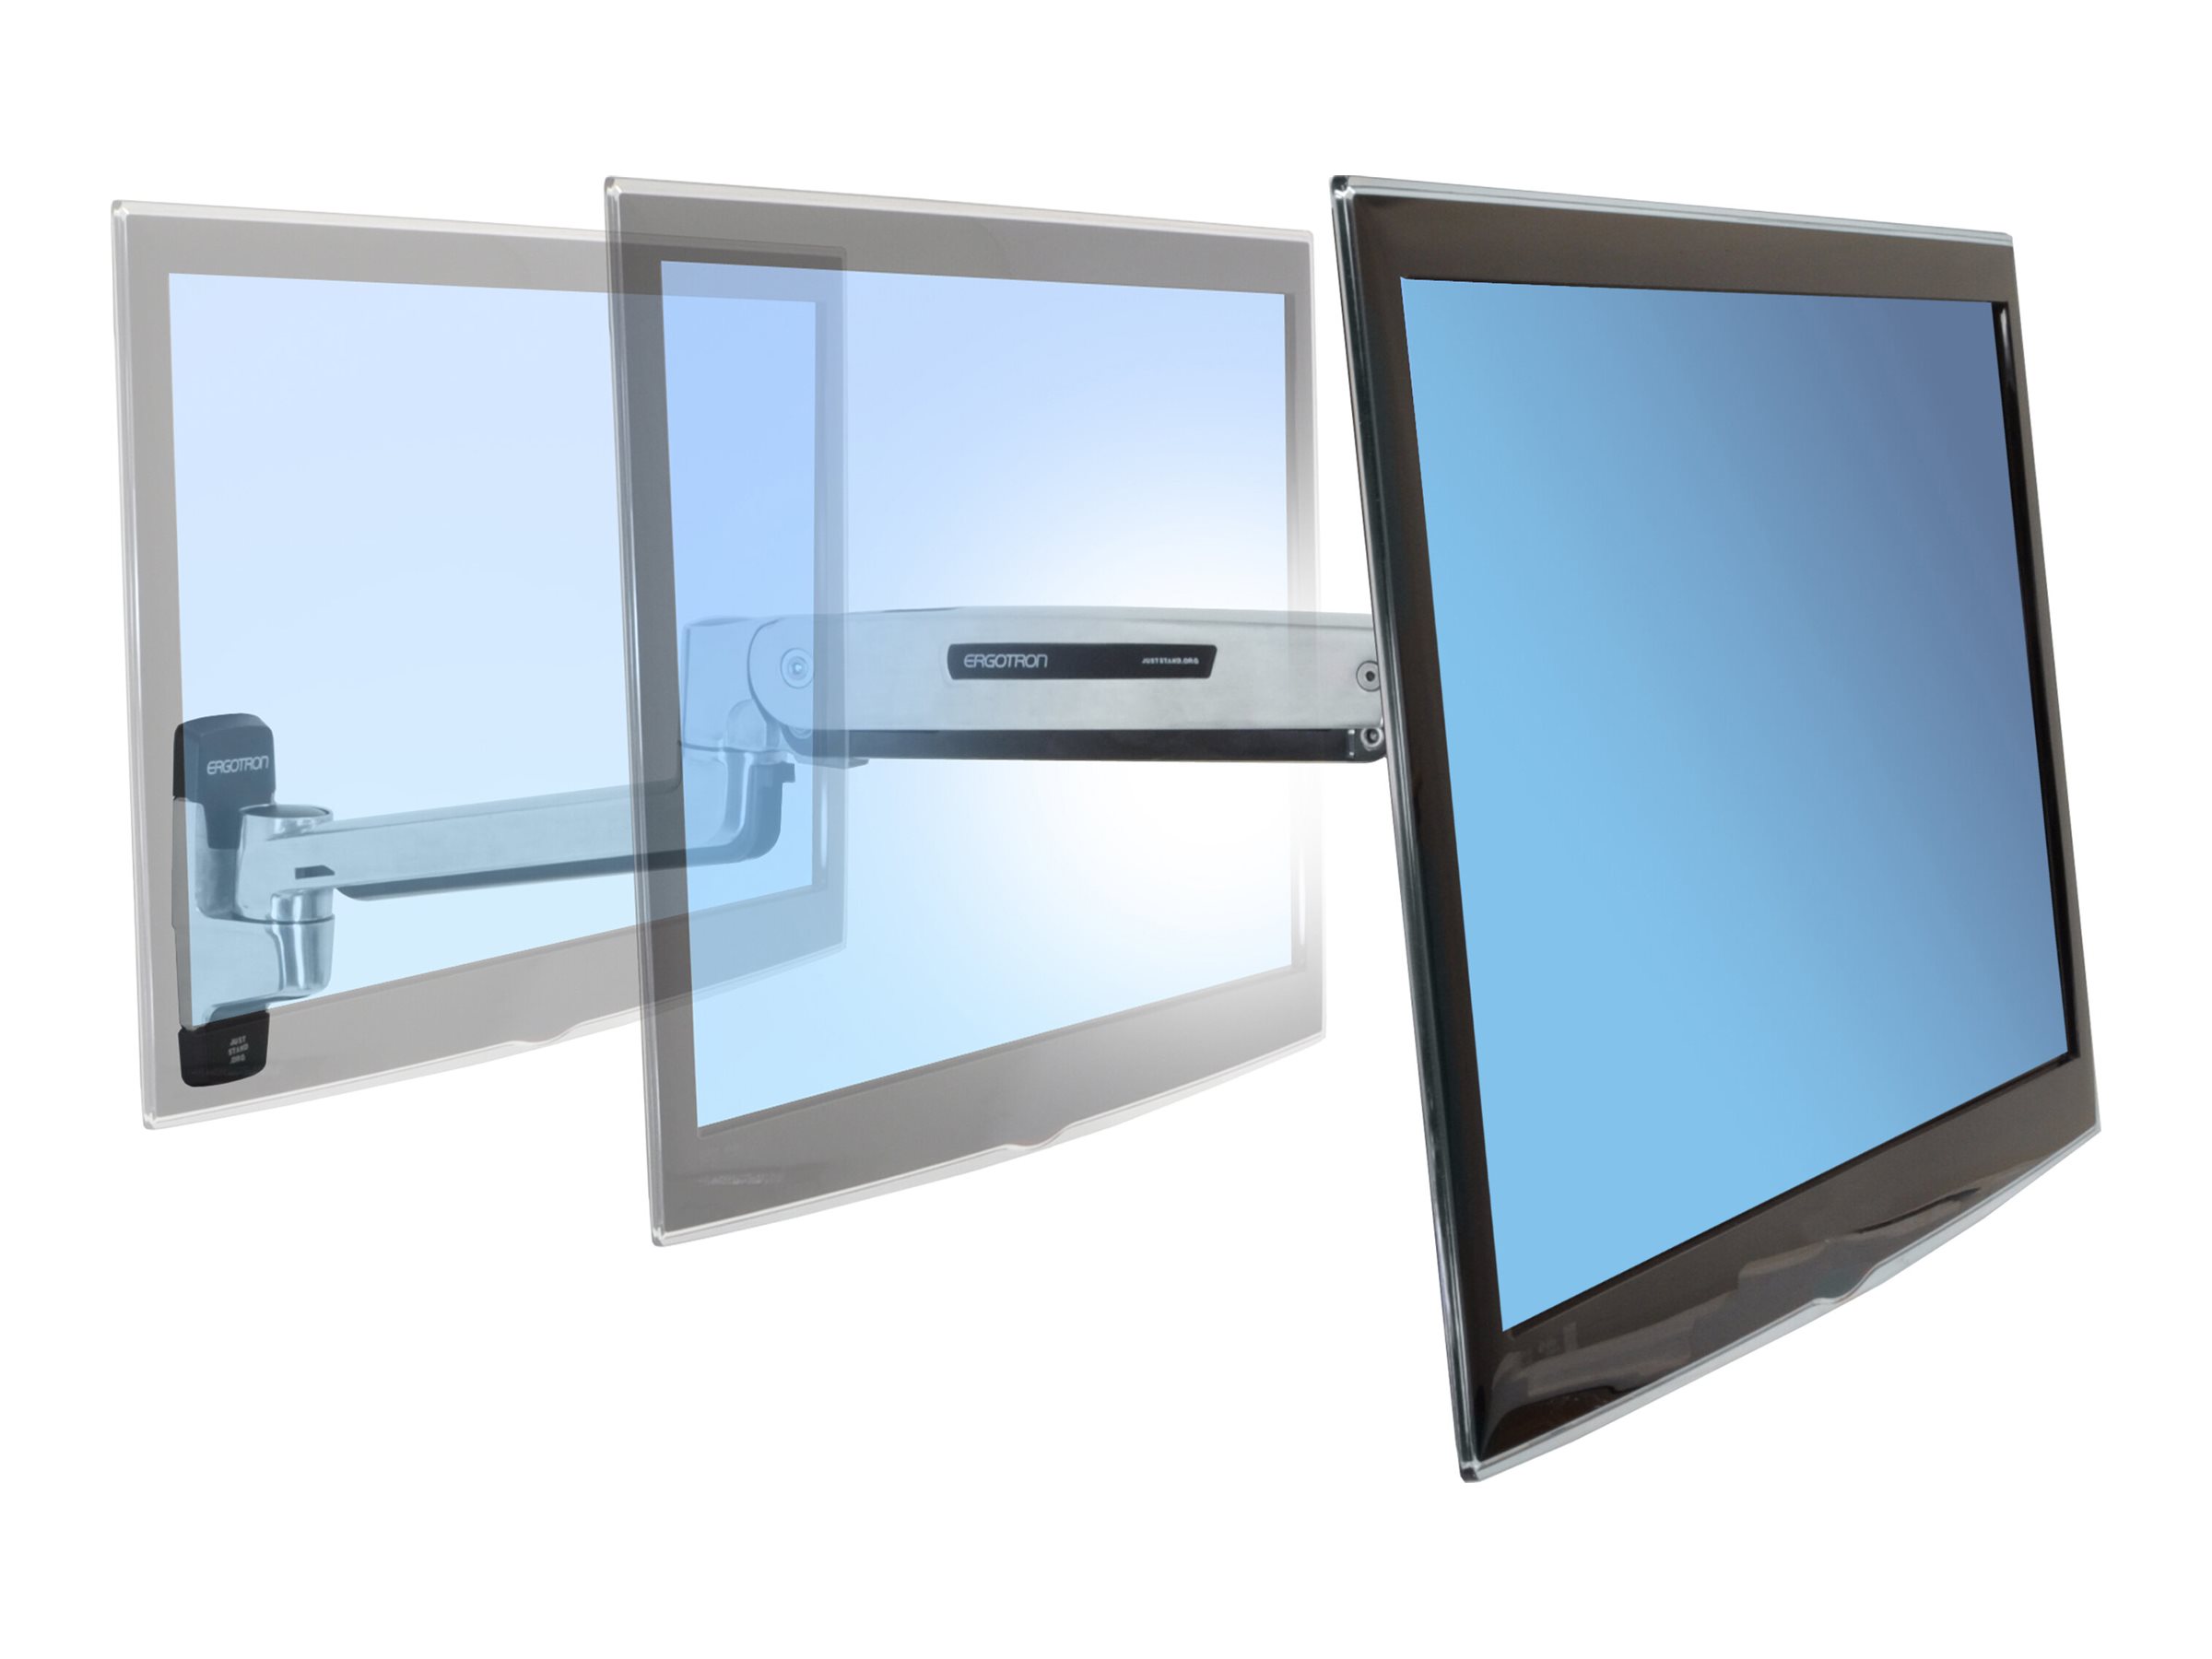 Ergotron LX - Kit de montage (adaptateur VESA, bras position assise-debout, base, extension) - pour Écran LCD - capacité 3,2 - 11,3 kg - aluminium poli - Taille d'écran : jusqu'à 42 pouces - montable sur mur - 45-353-026 - Accessoires pour écran